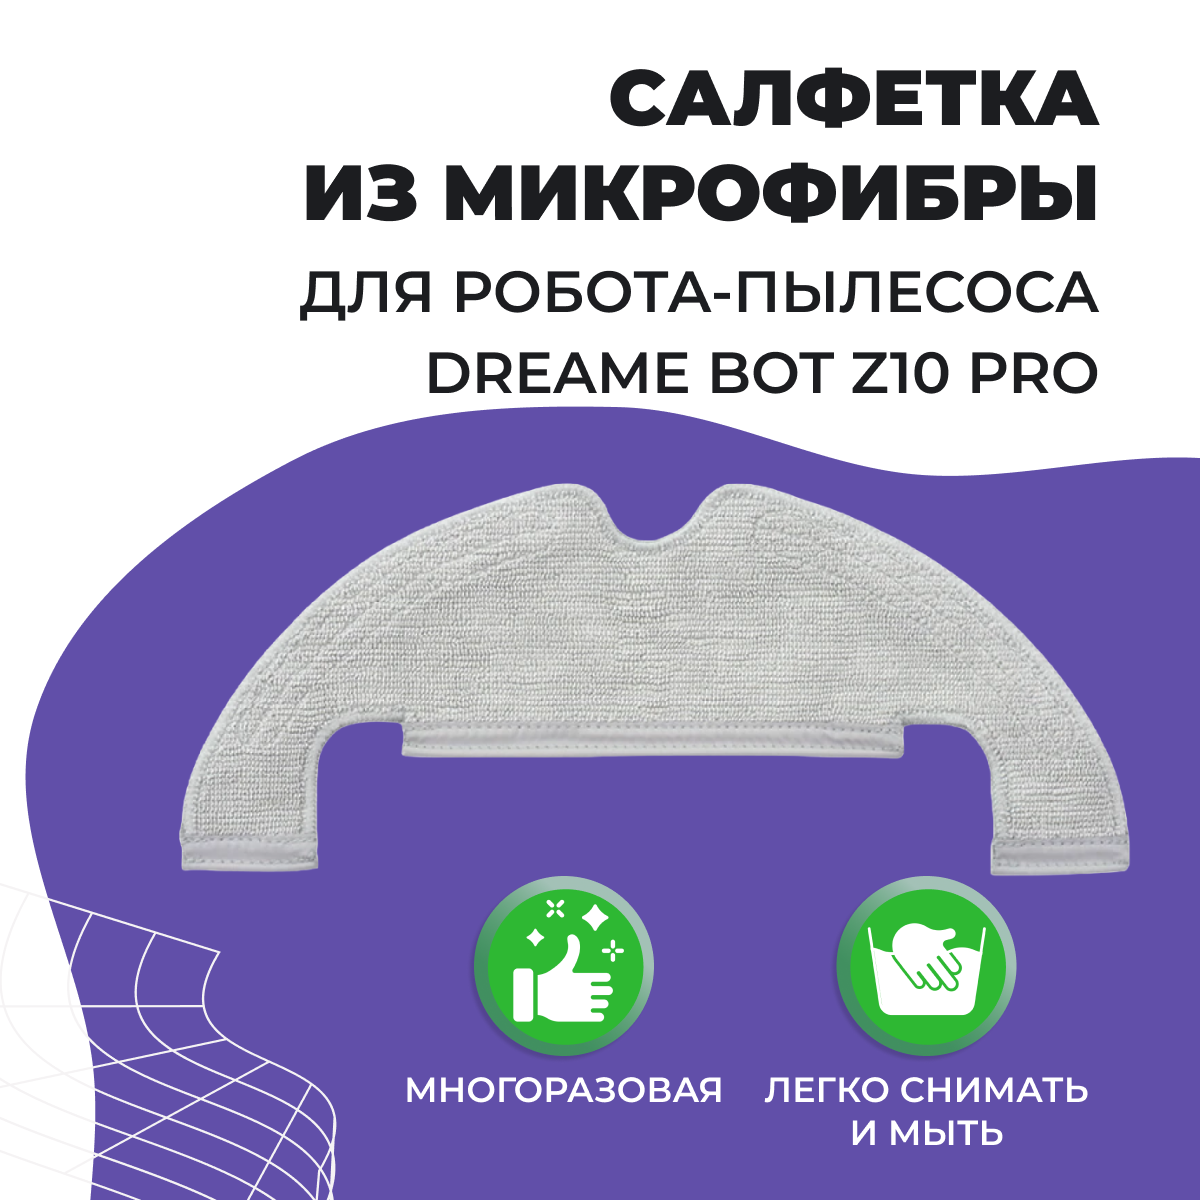 Тряпка для робота-пылесоса Dreame Bot Z10 Pro 558063